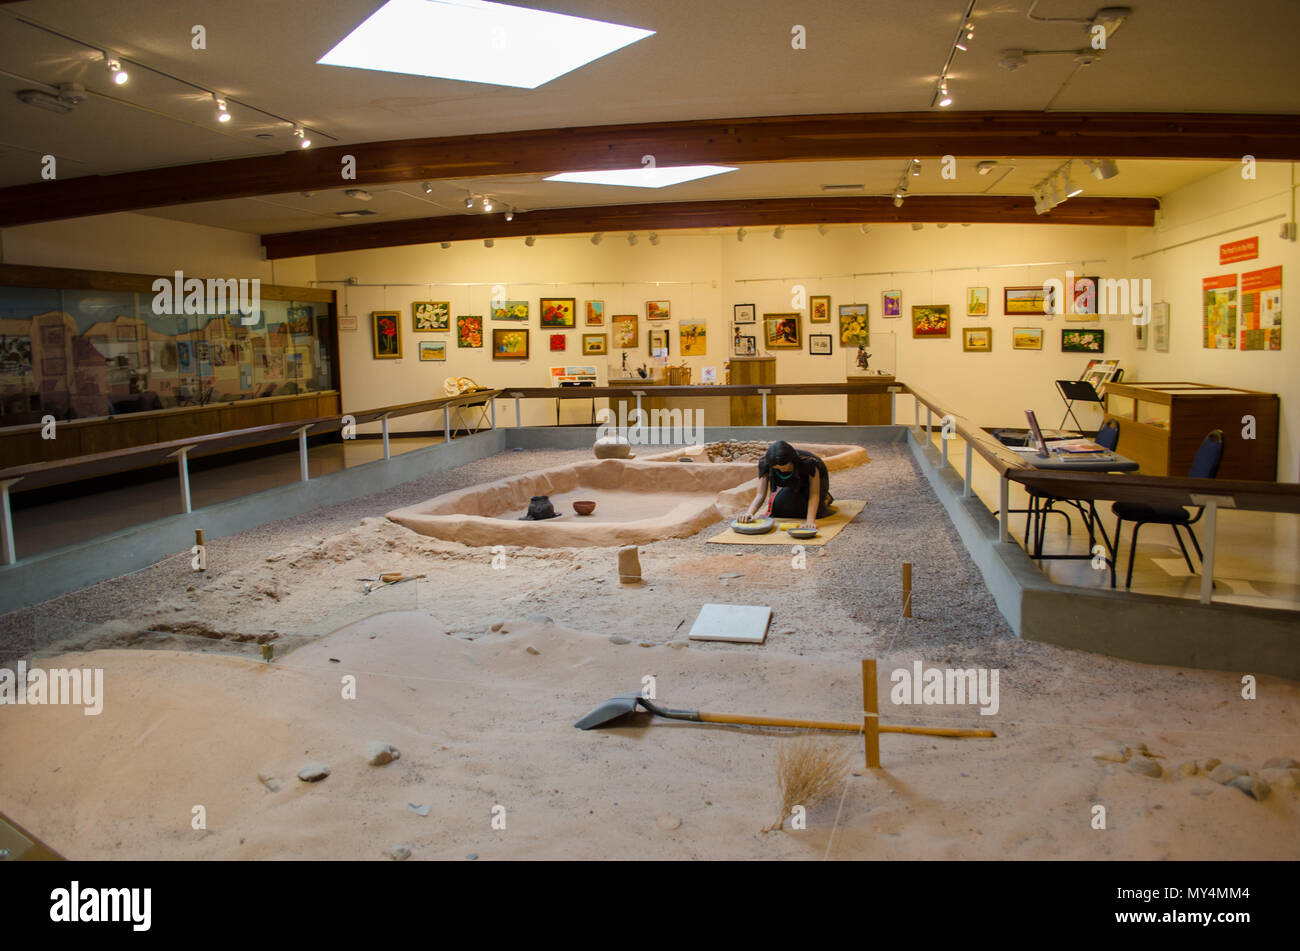 Musée de la ville perdue en vedette d'une fouille archéologique et de restauration d'une communauté indienne Anasazi Pueblo ou d'environ 1 000 ans. Banque D'Images